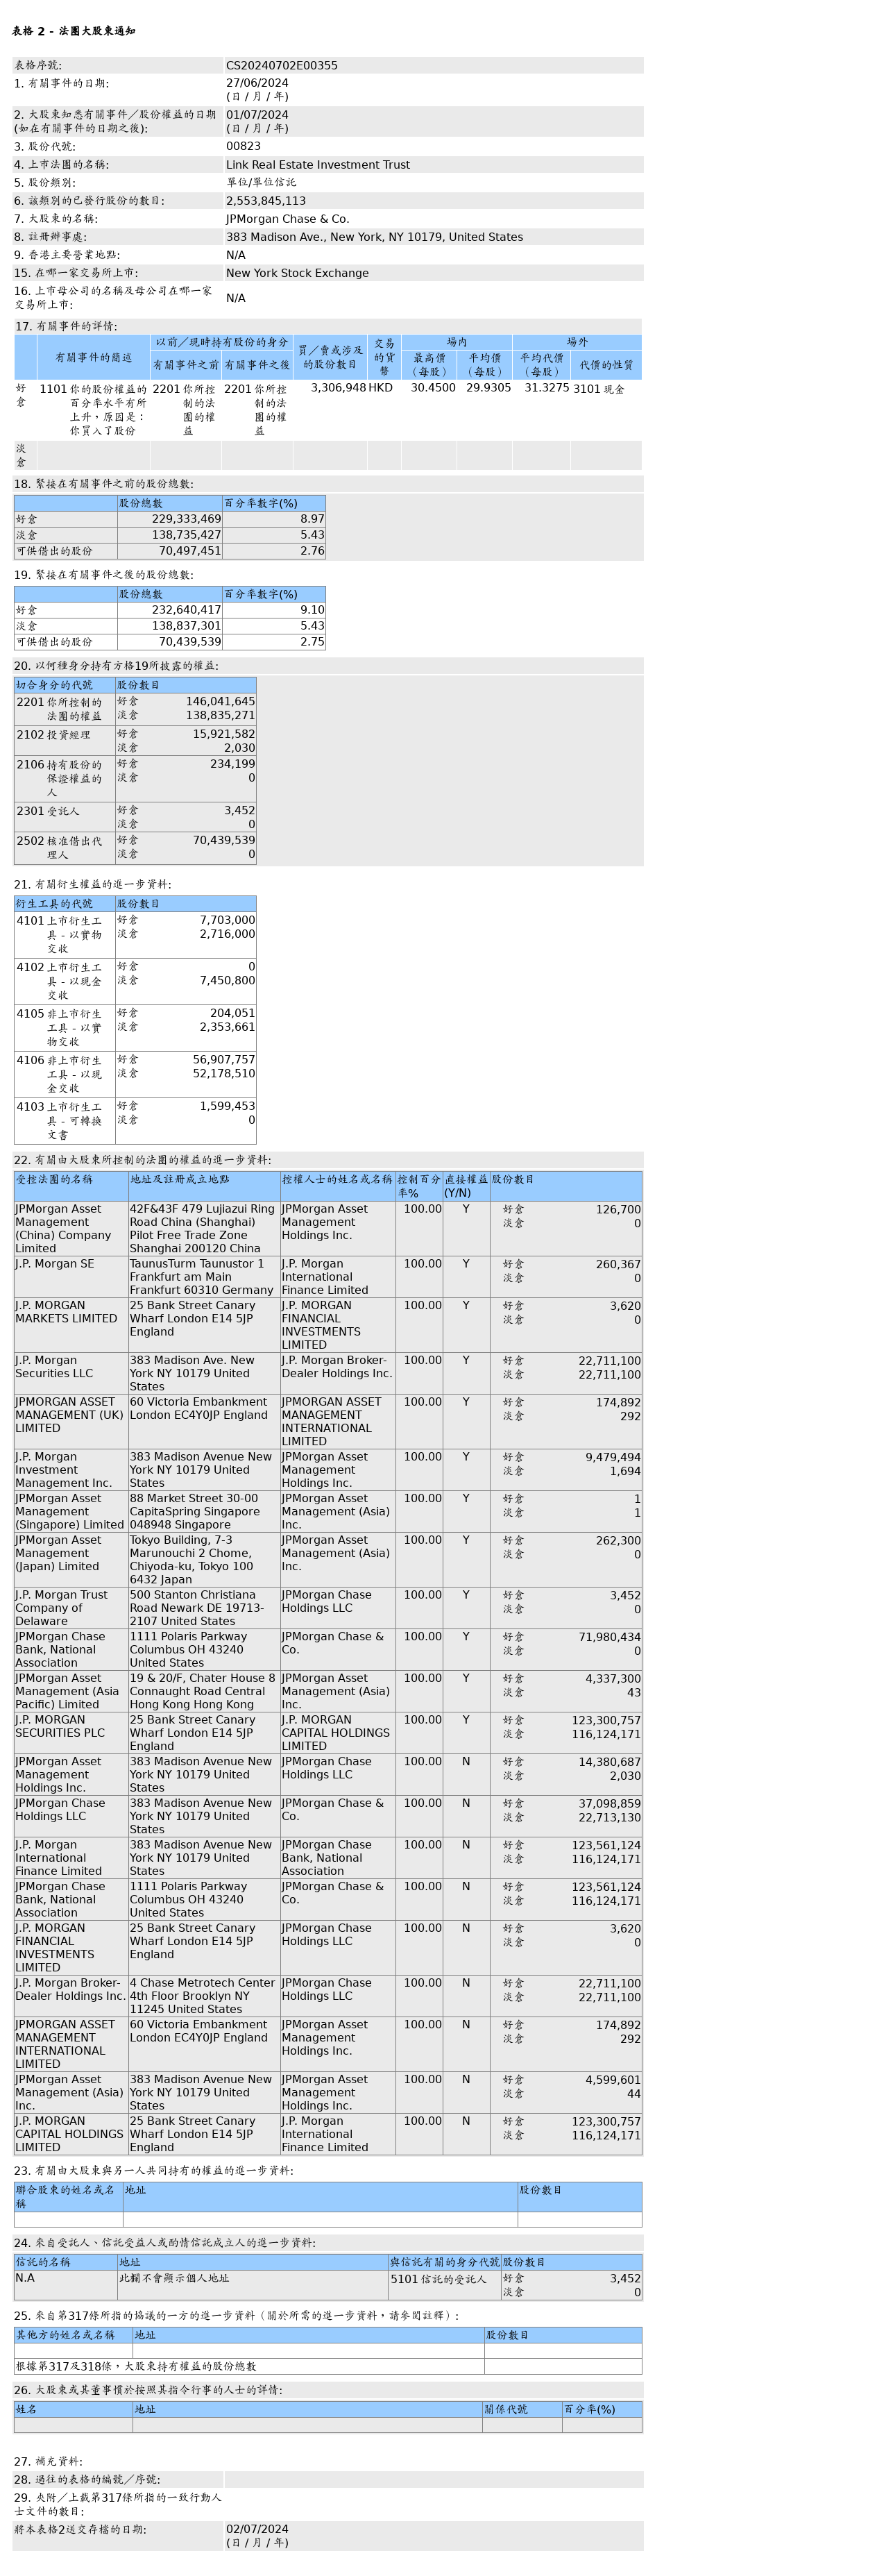 领展房产基金(00823.HK)获摩根大通增持330.69万个基金单位，价值约9,897.86万港元